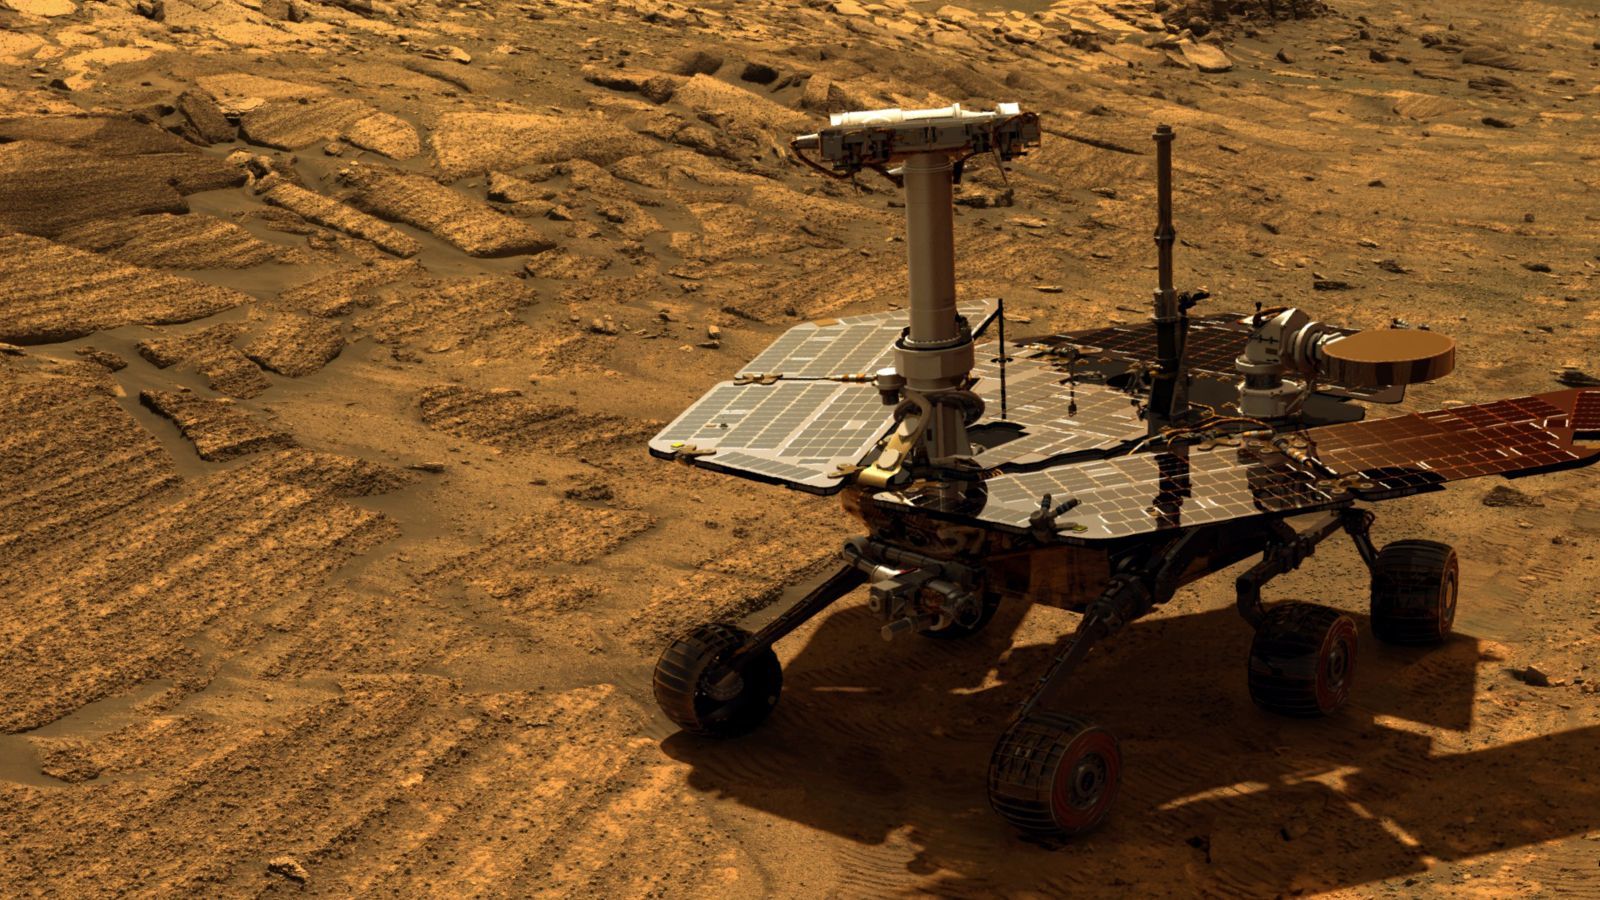 Потерян навсегда: NASA не смогла установить связь с марсоходом Opportunity